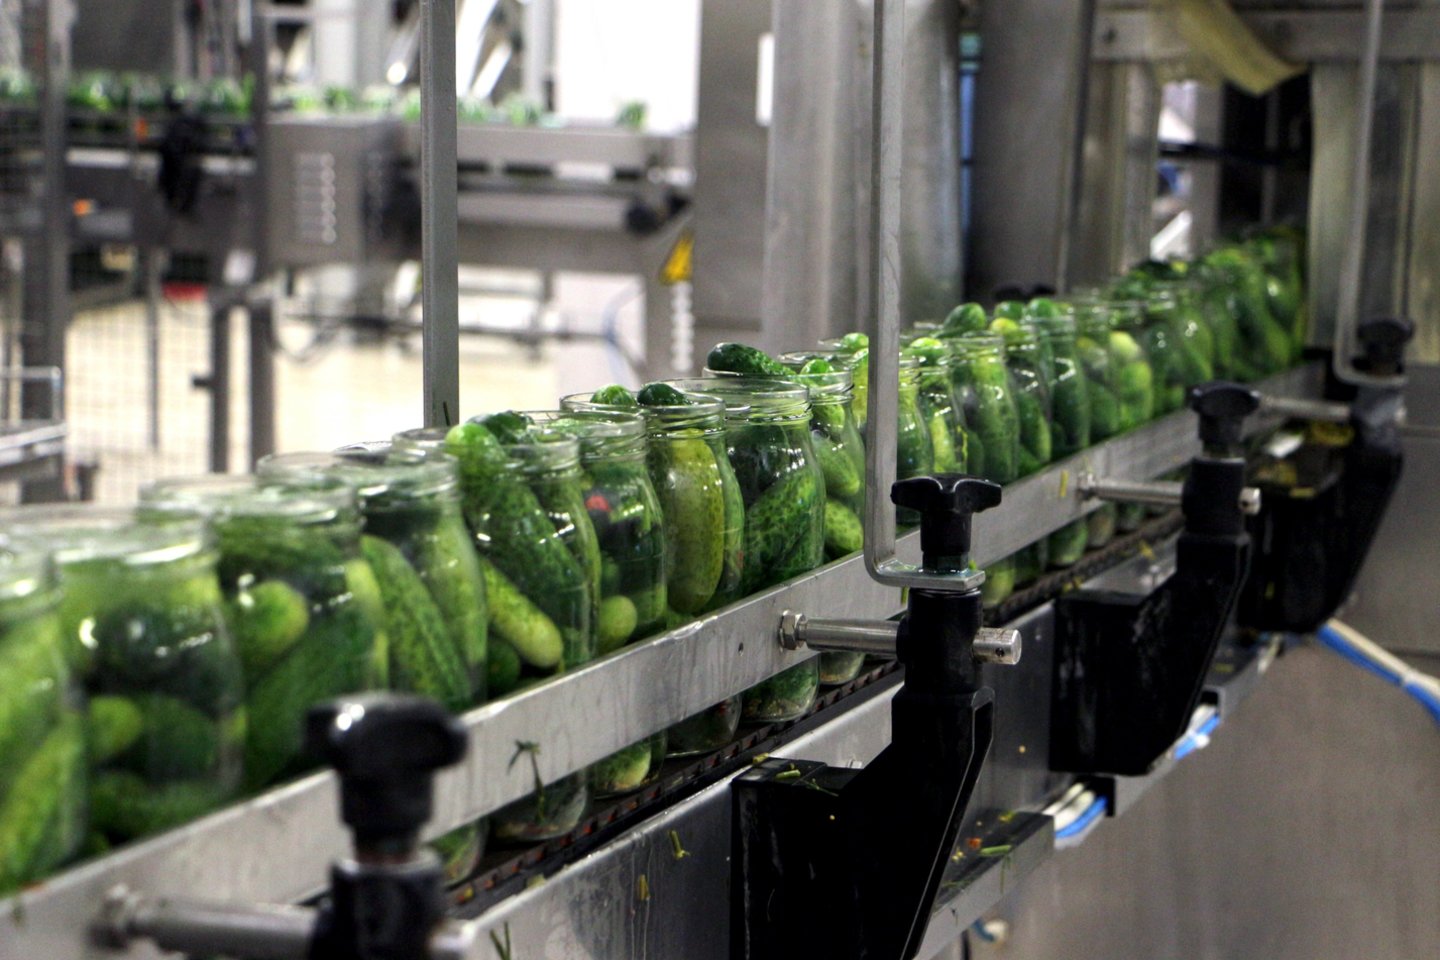 Kėdainių konservų fabrike agurkai yra ruošiami pagal 18 unikalių receptūrų.